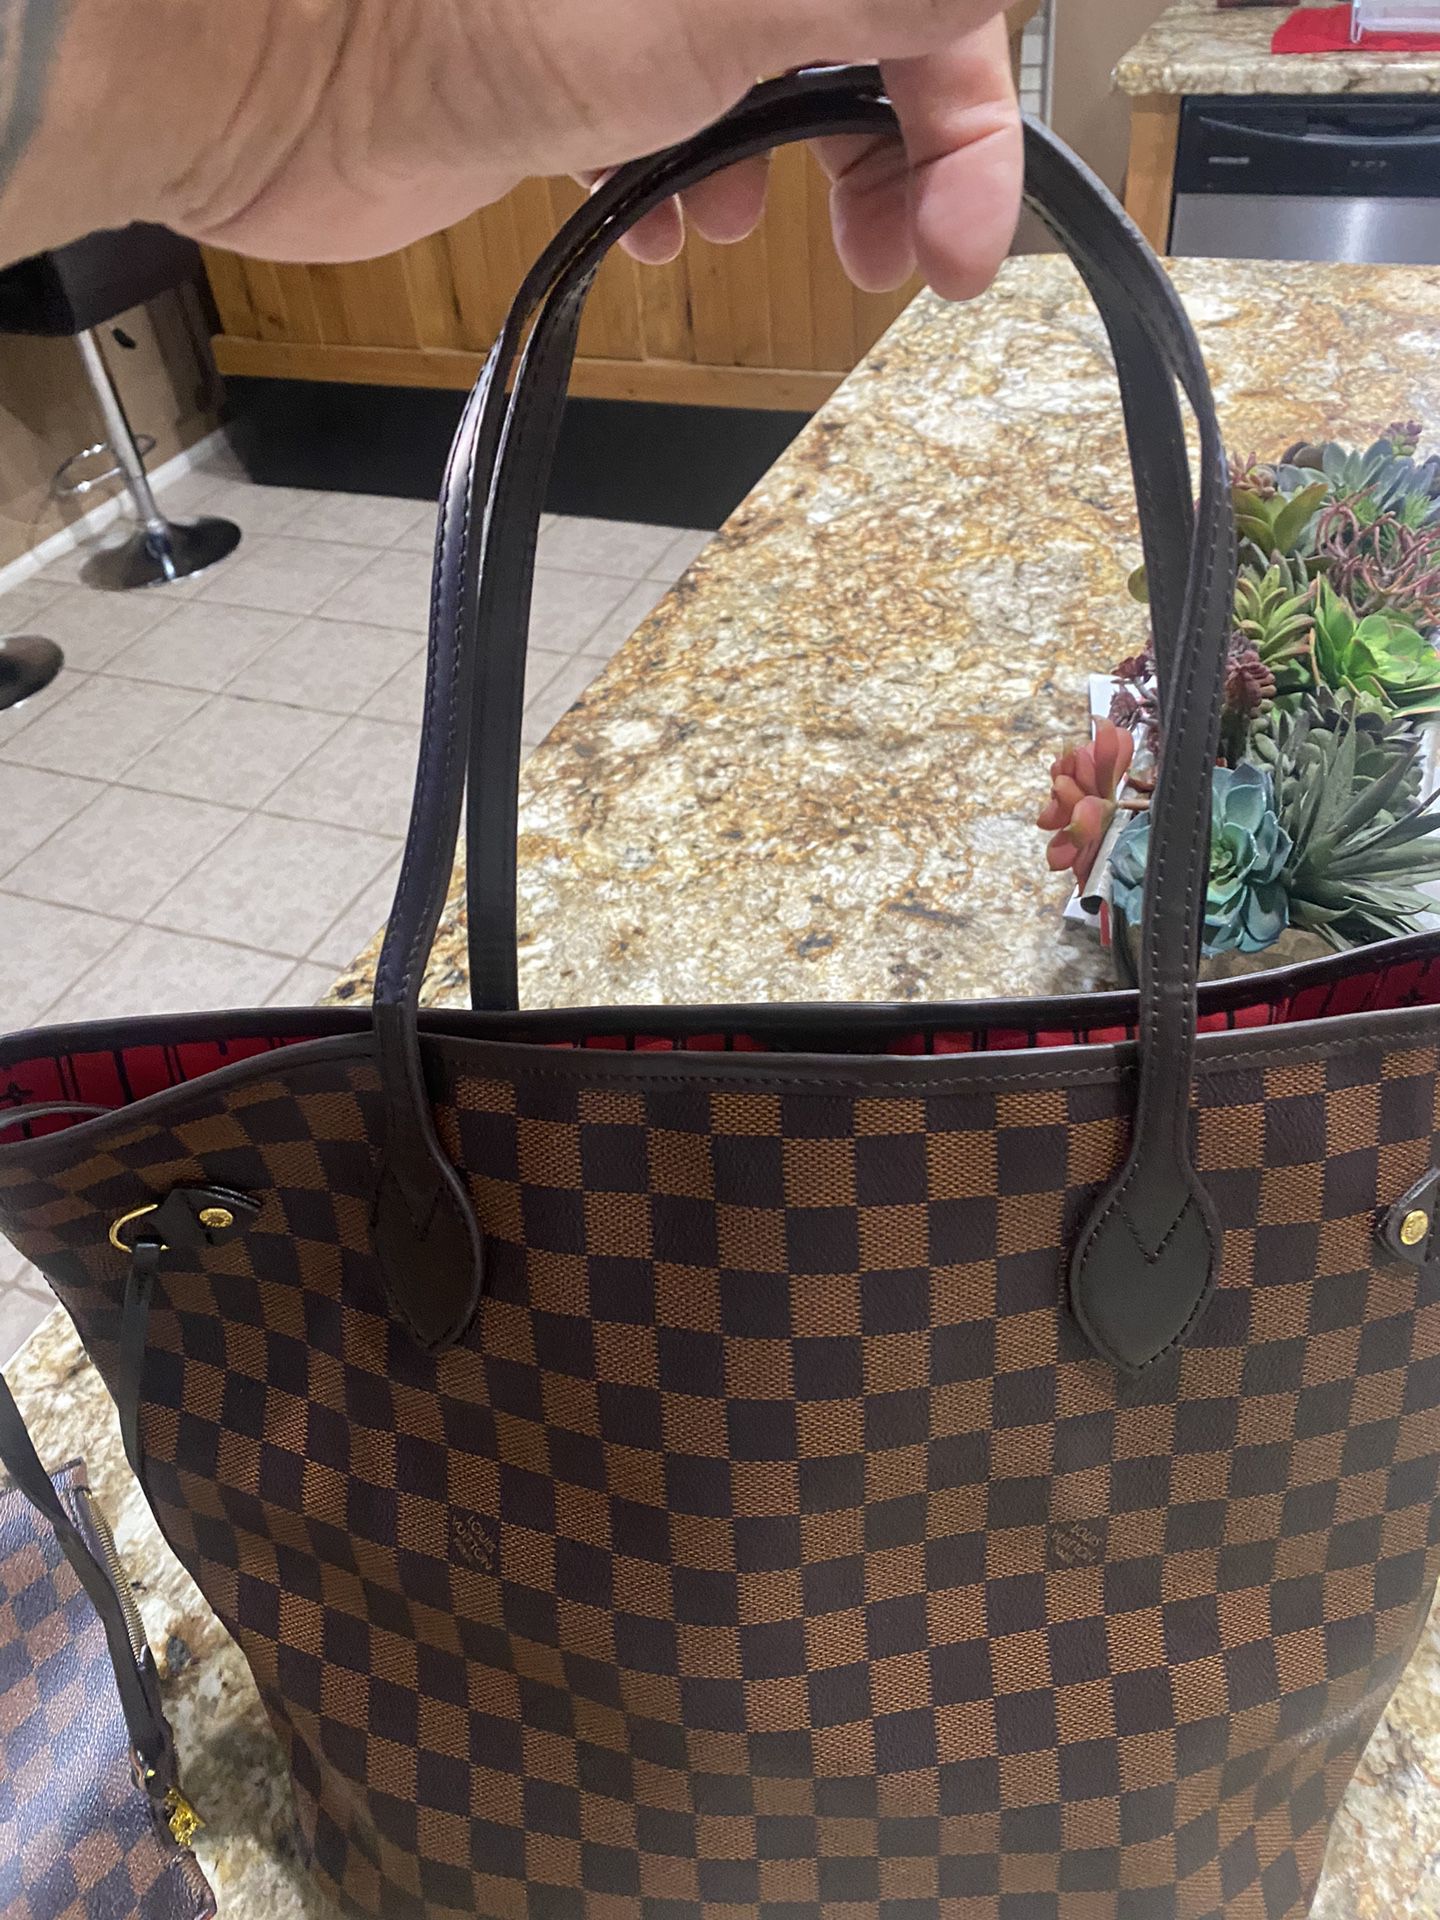 Louis  Vuitton Bag